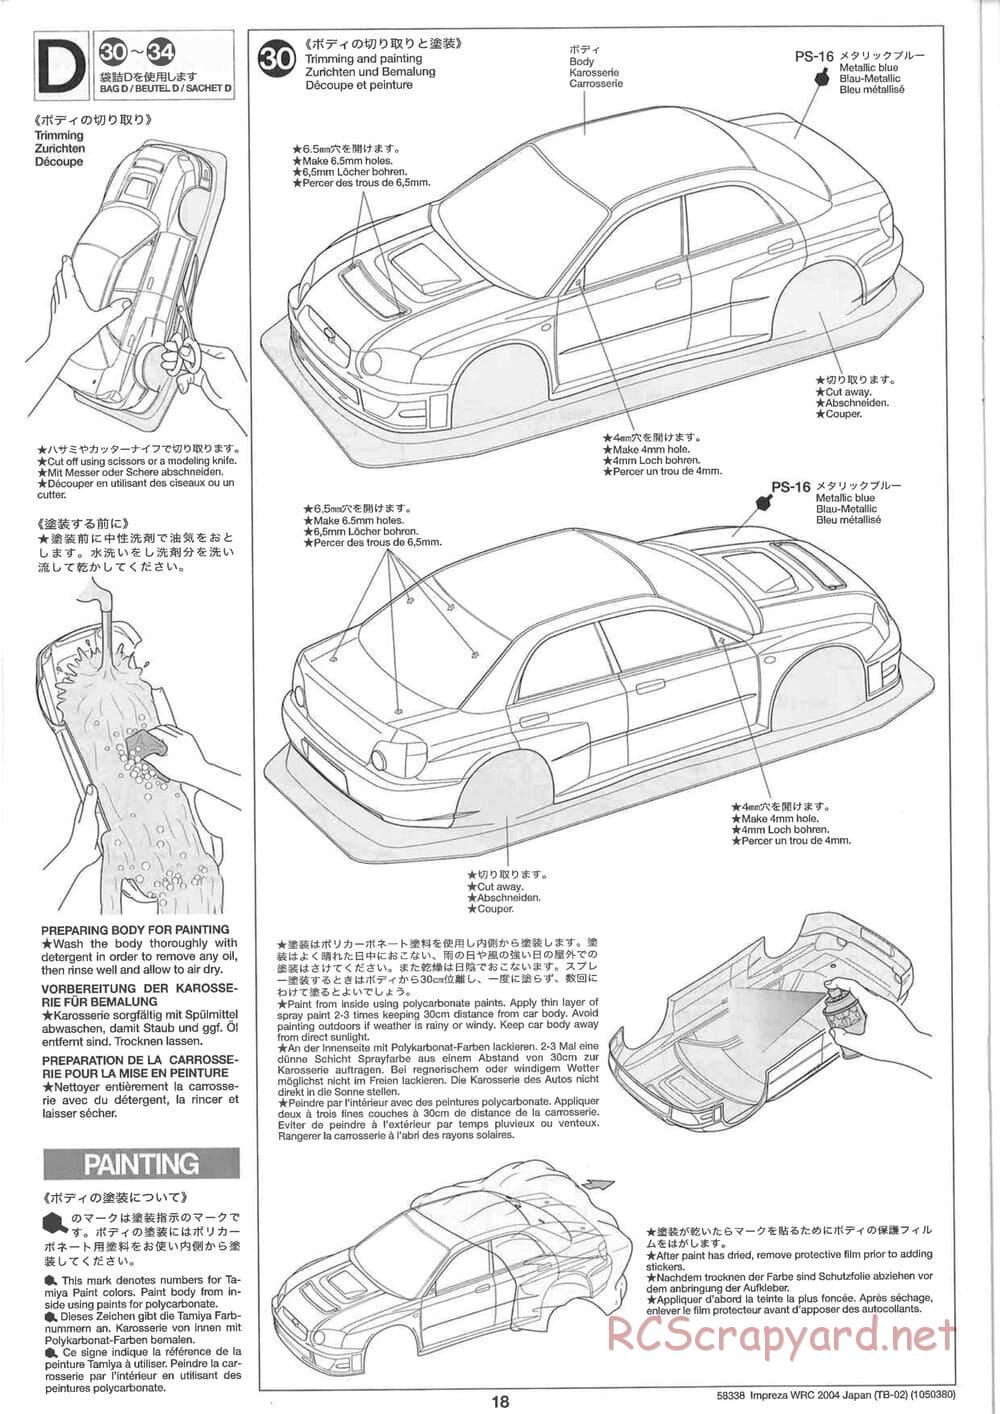 Tamiya - Subaru Impreza WRC 2004 Rally Japan - TB-02 Chassis - Manual - Page 18